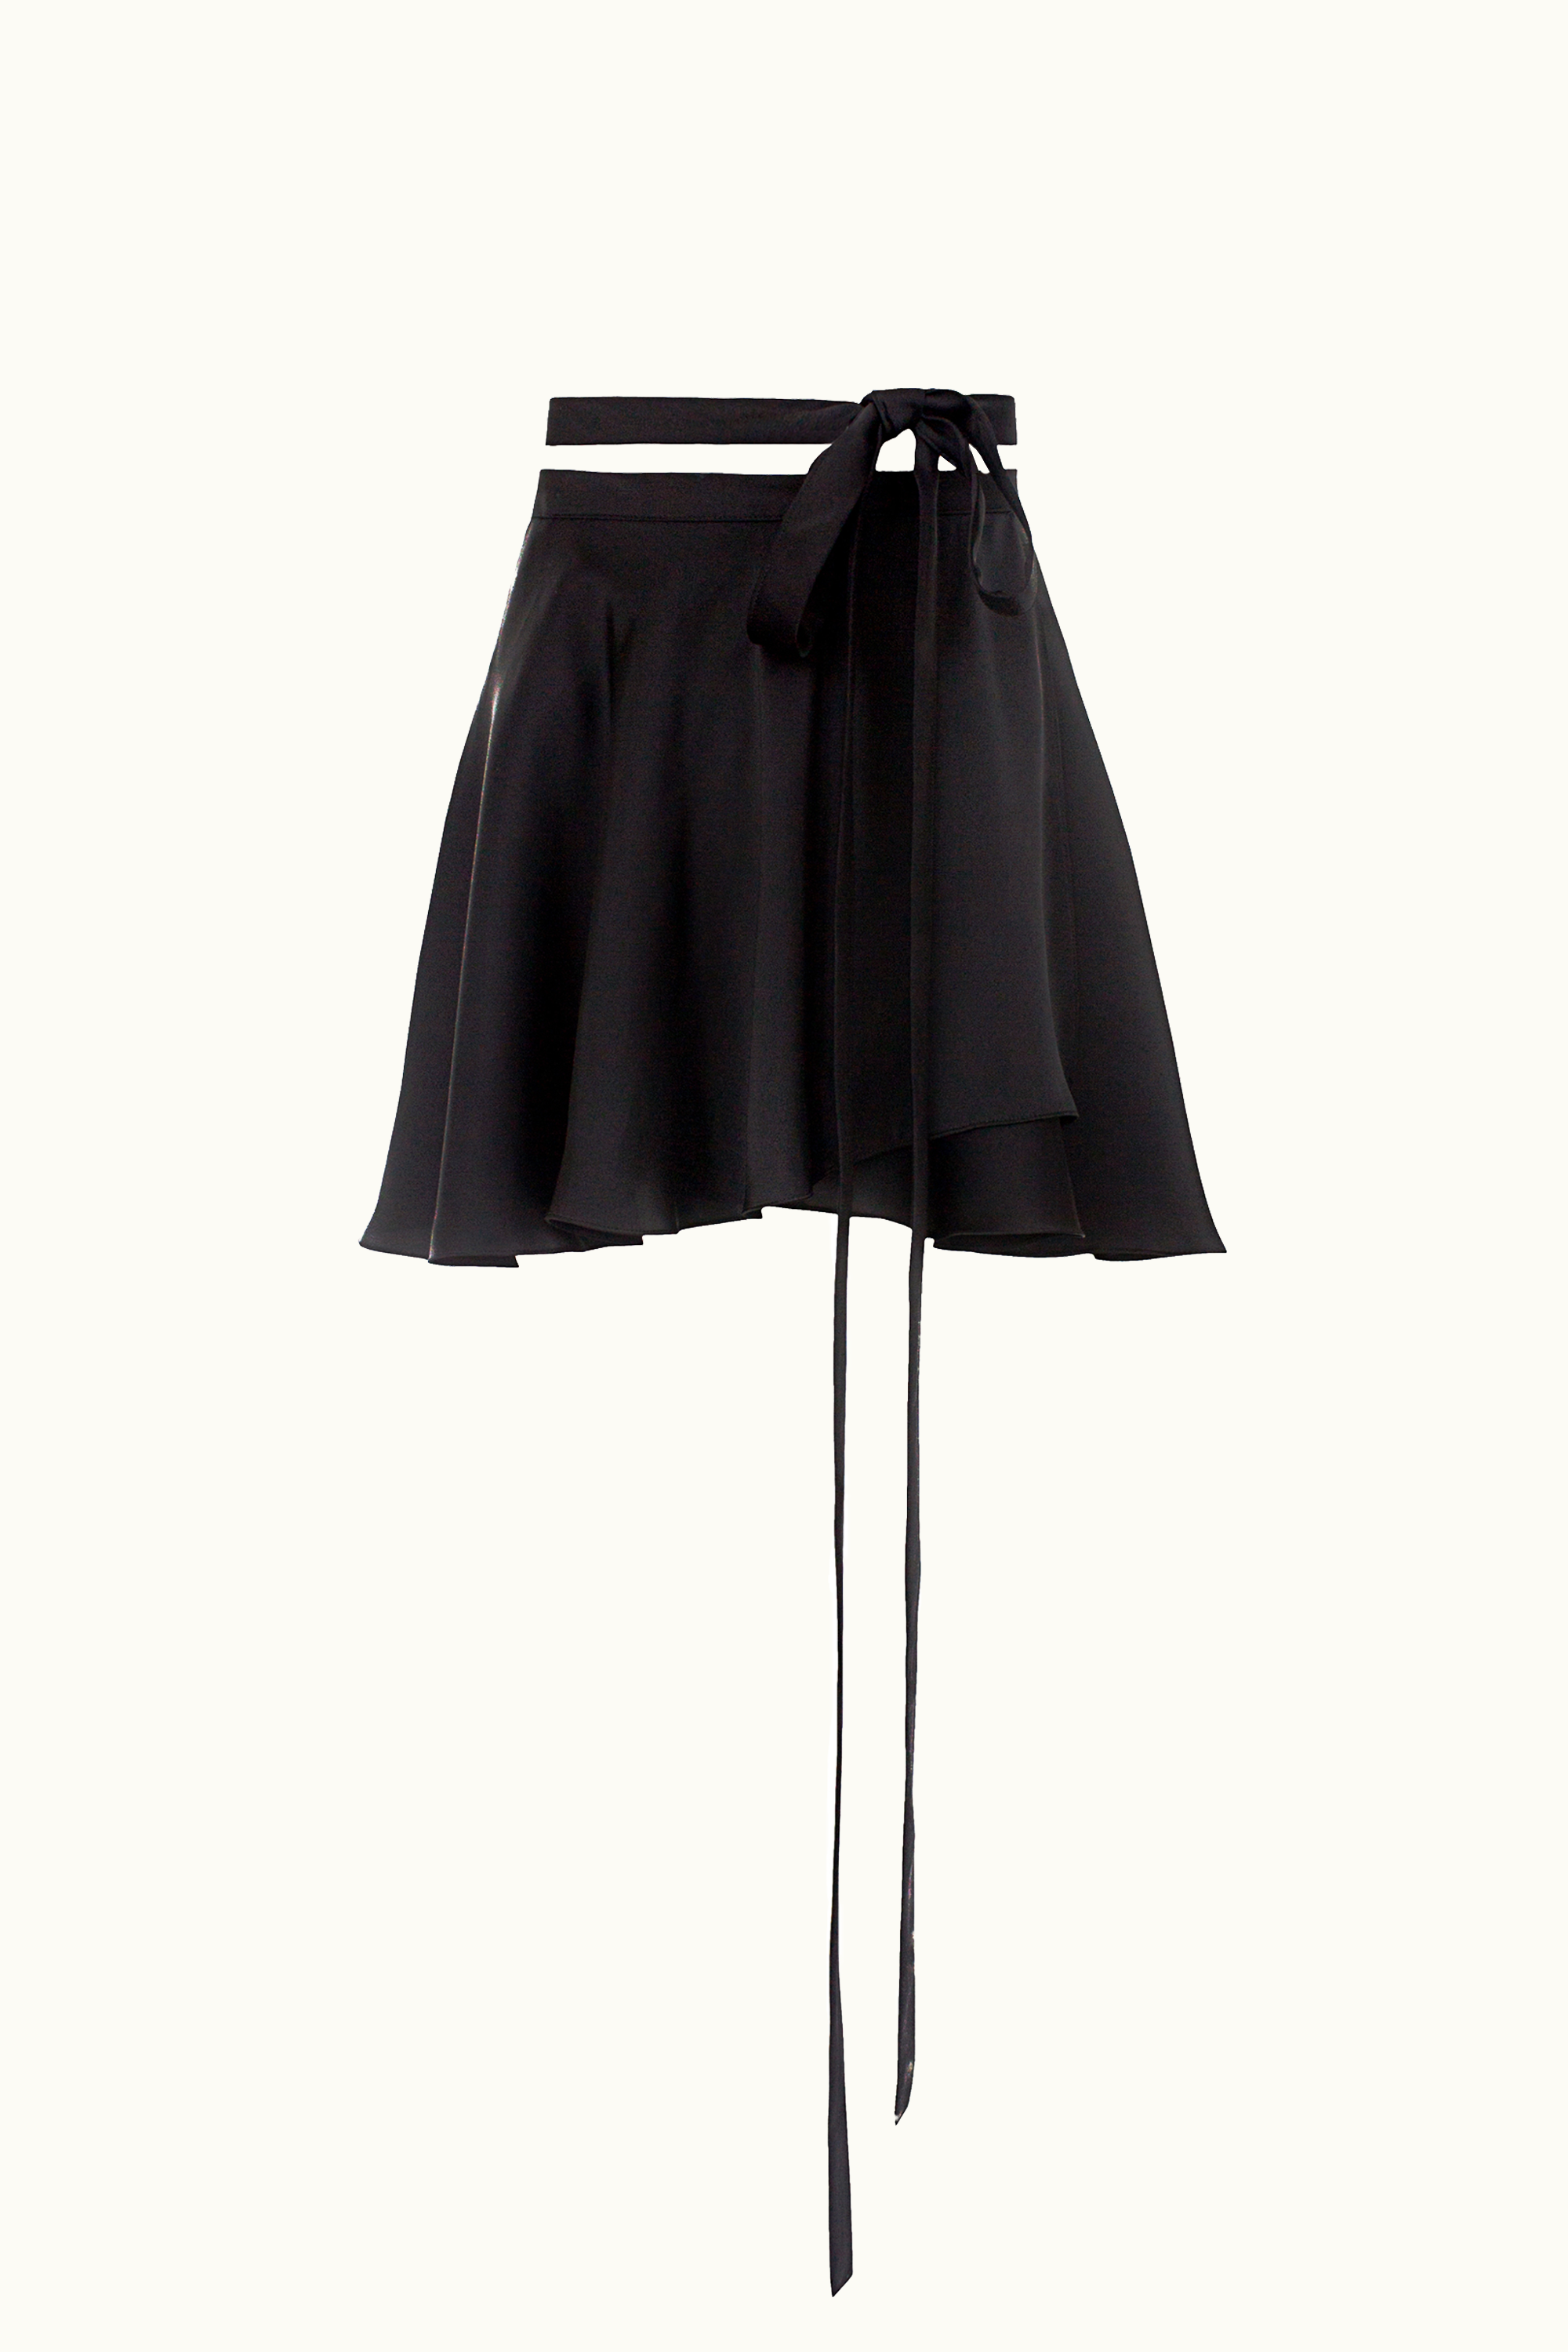 Tulle skirt black tights, Ballerina skirt | Tights With Skirt Outfit | Ballerina  skirt, Skirt Outfits,